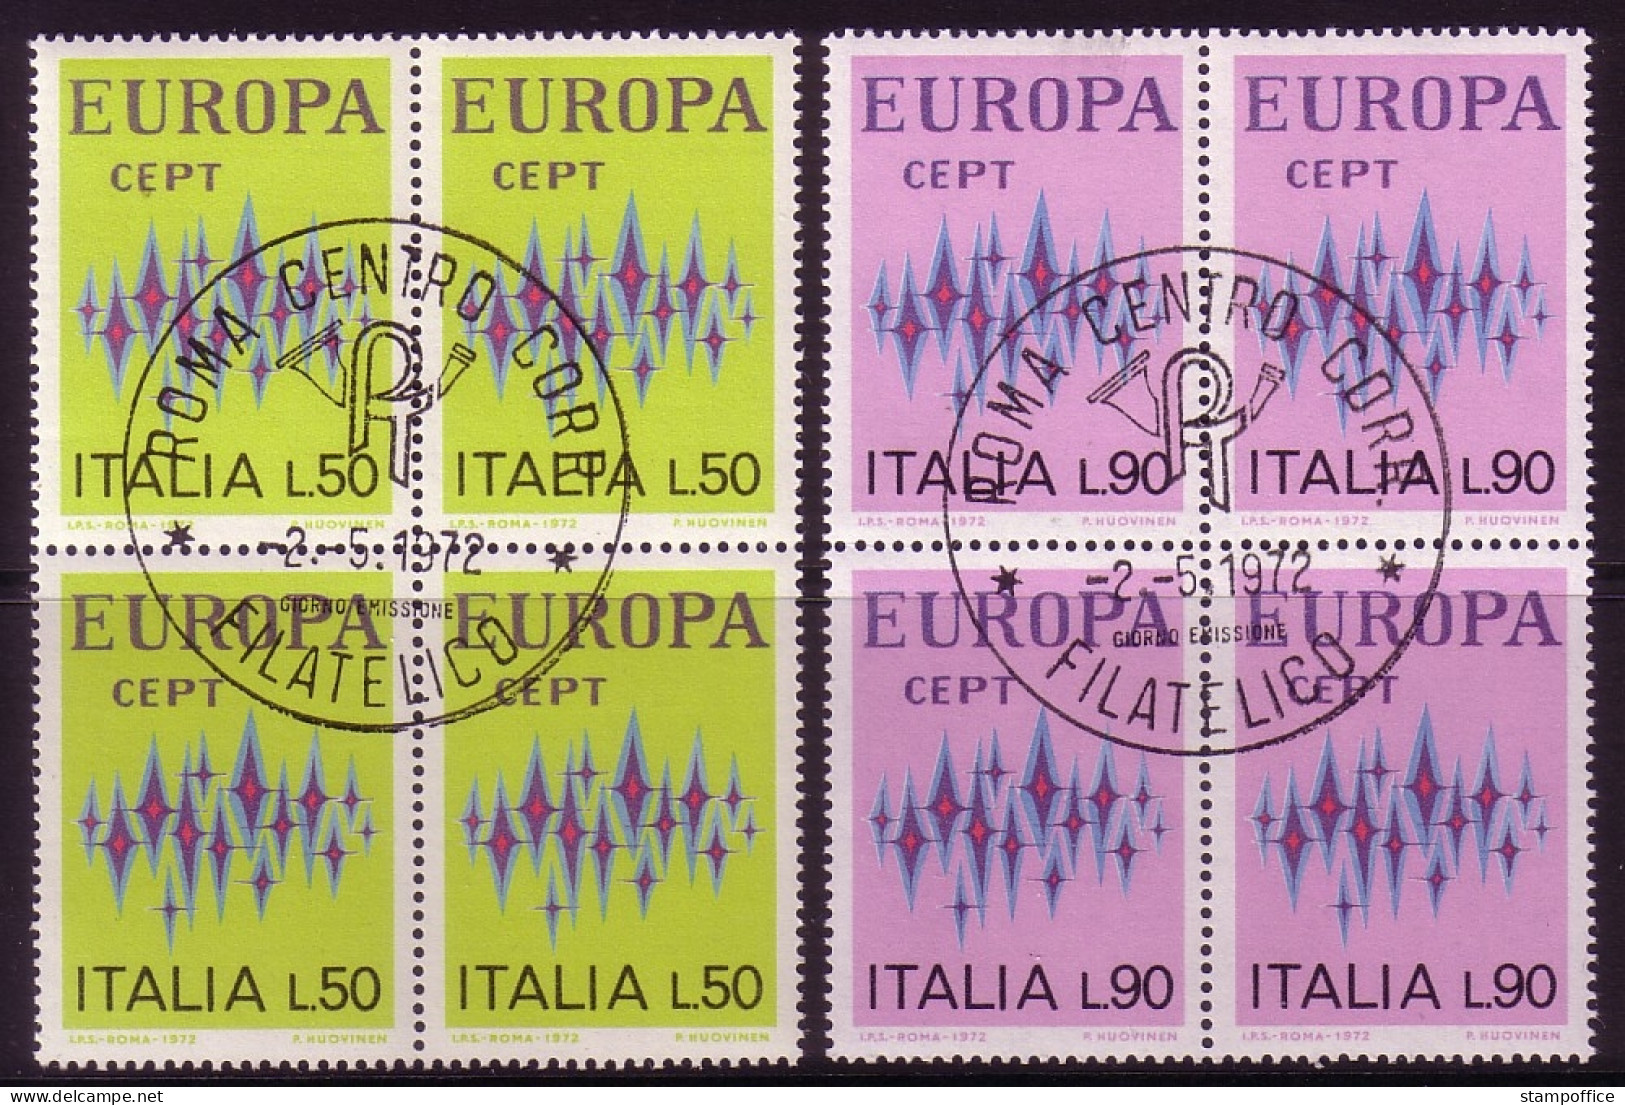 ITALIEN MI-NR. 1364-1365 O 4er BLOCK EUROPA 1972 - STERNE - 1972